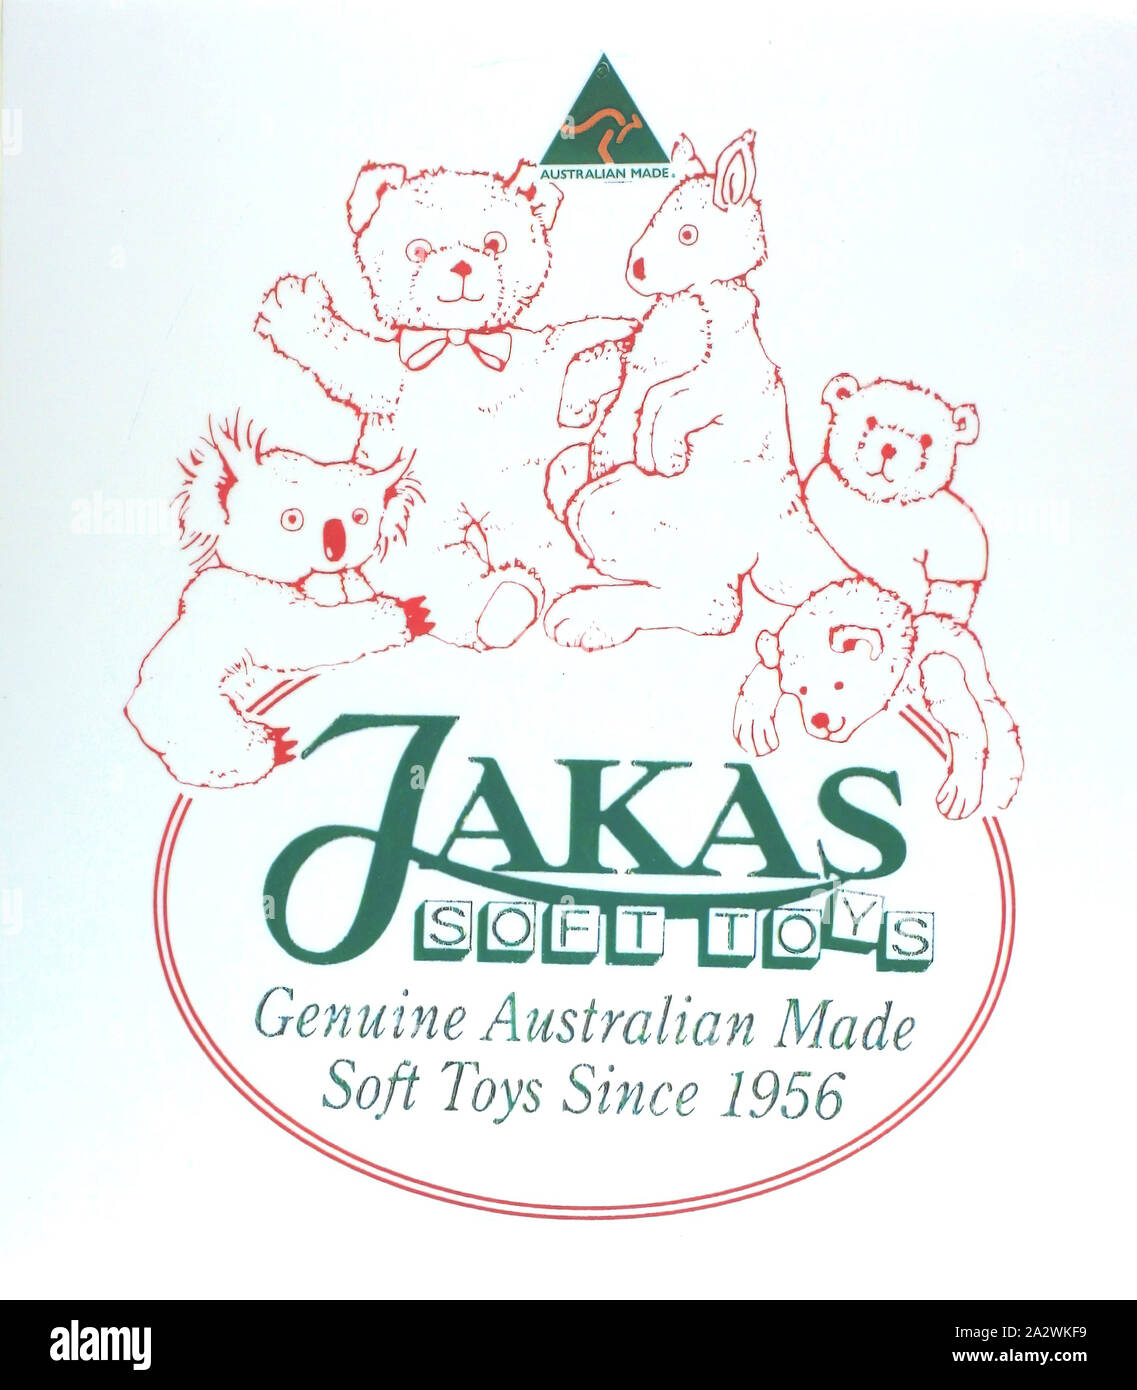 Logo design - Jakas jouets mous, Melbourne, 1995-1998, de l'impression couleur élargie Jakas soft toys logo design. Les jouets mous Jakas était une société basée à Melbourne qui a conçu et fabriqué des peluches de haute qualité authentique à partir de 1956. Leur gamme inclus nounours, golliwogs, les animaux et les oiseaux. Ils ont cessé la production à la fin des années 1990, de nombreux fabricants de jouets local survivant en concurrence avec des importations d'outre-mer moins cher Banque D'Images